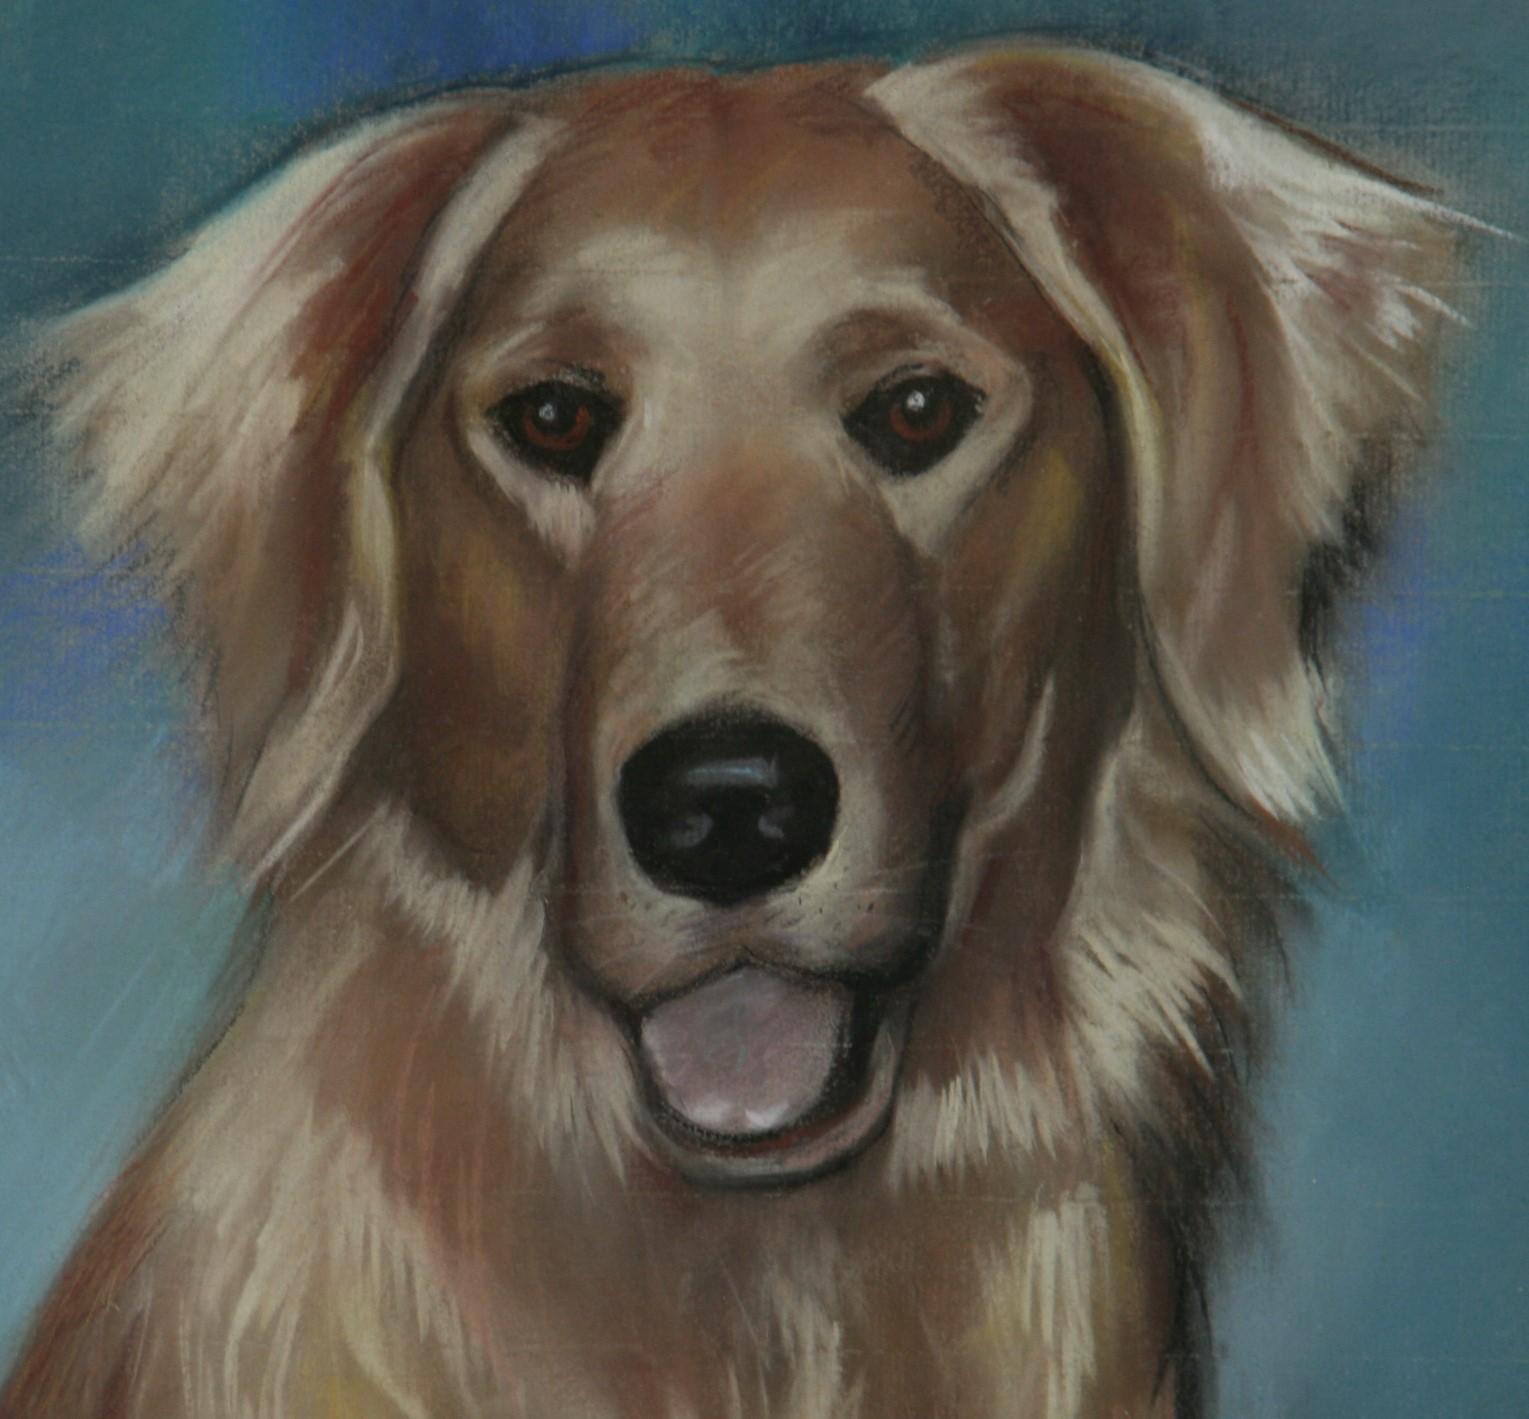 3953 Pastel à l'huile sur papier d'un chien golden retriever
Taille de l'image 11.5x15.5
Dans un cadre en chêne